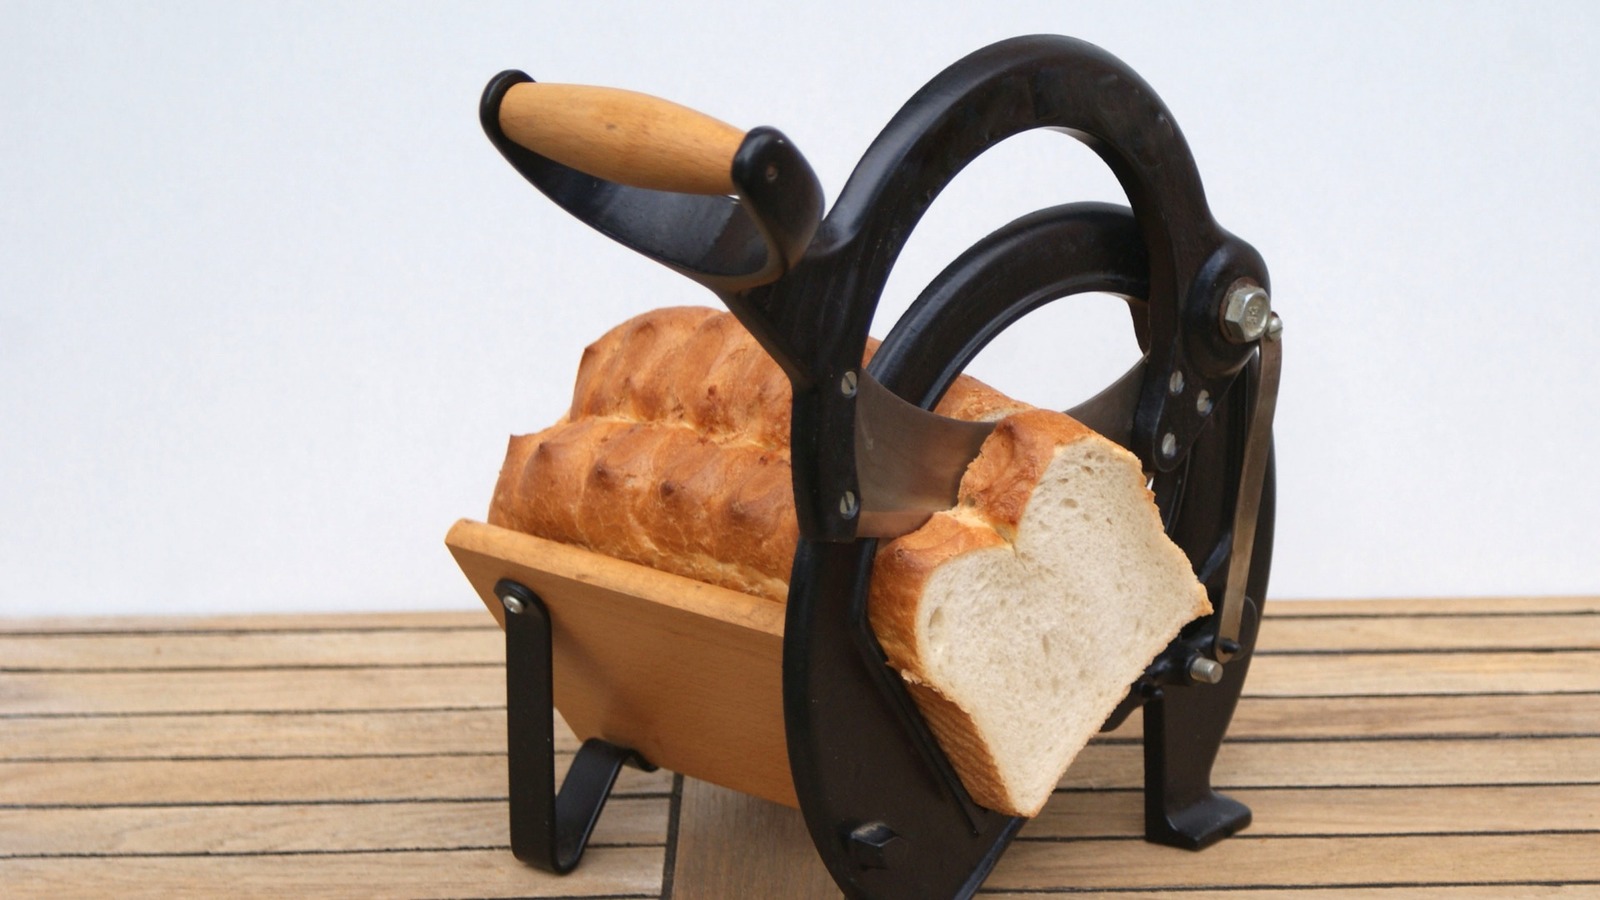 bread slicing machine, bread slicing machine suppliers, bread slicing  machine for sale, bread slicing machine prices, bread cutting machine